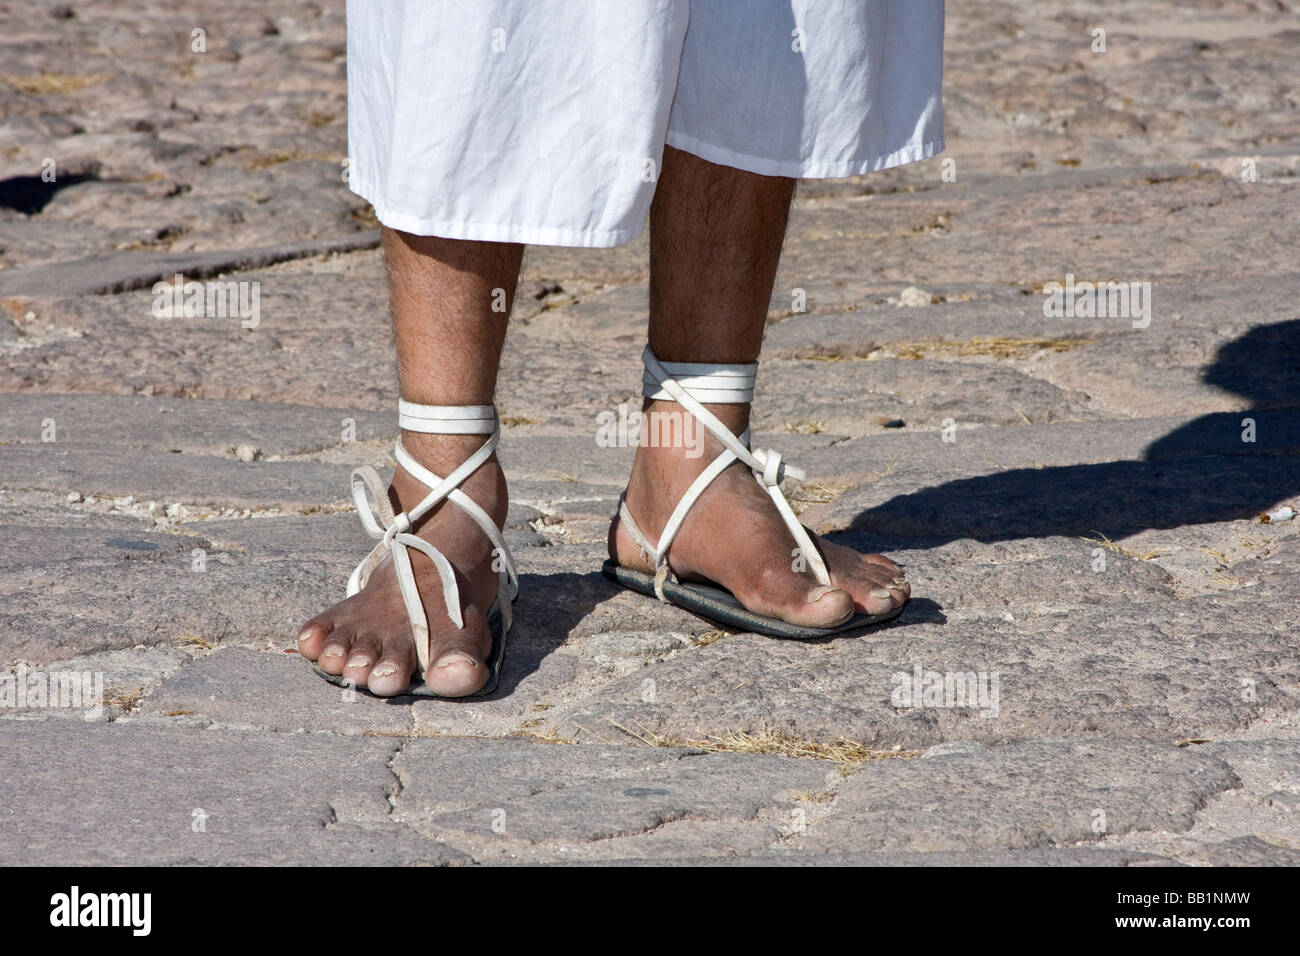 Hombre vestido con nativos hurache sandalia fabricada de sandalias con neumáticos de automóvil para suelas demuestra jaula de bolas en Barranca del Cobre, México Fotografía stock Alamy